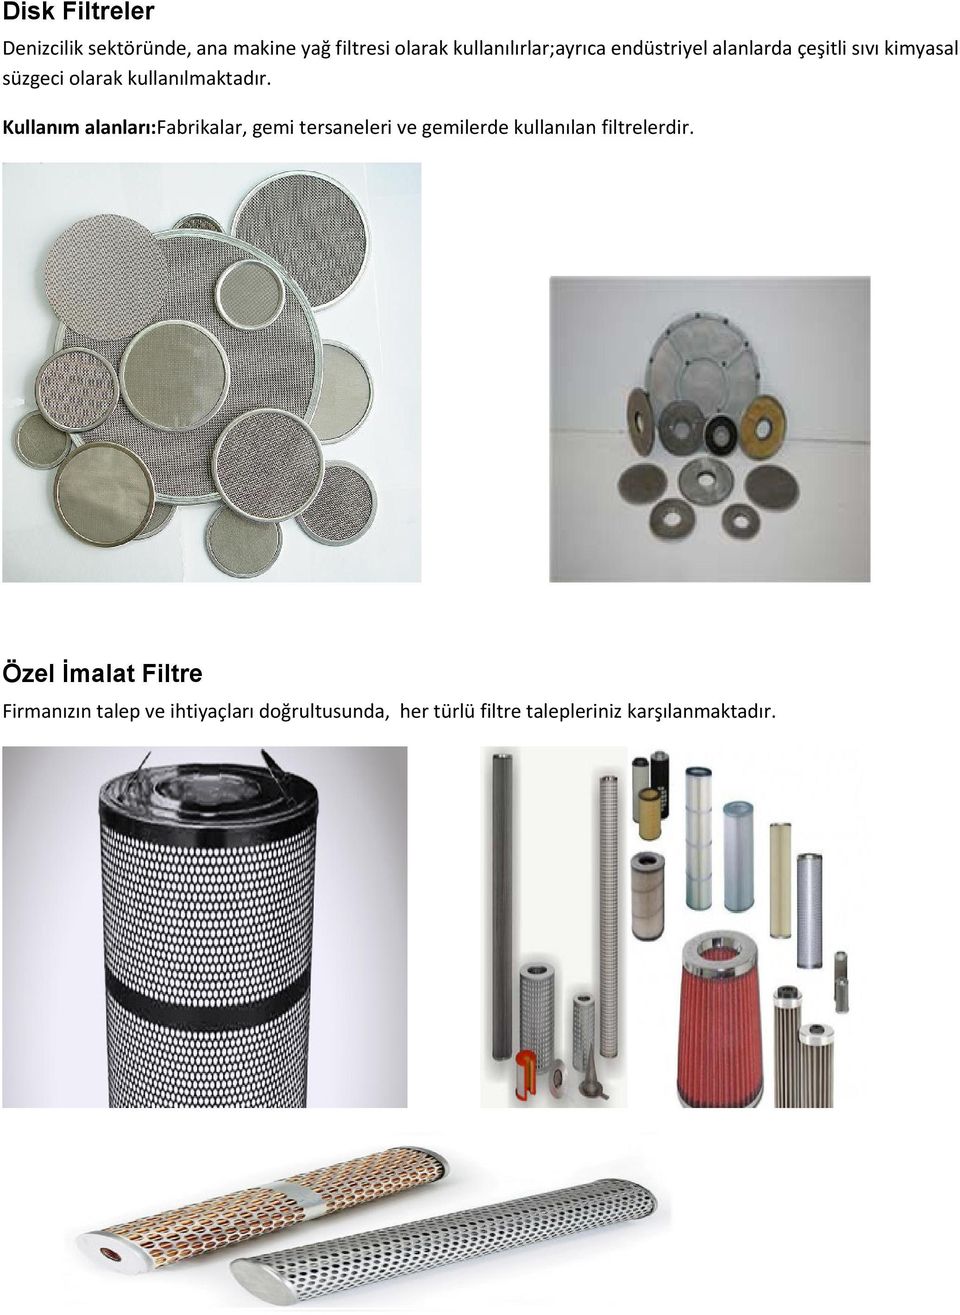 Kullanım alanları:fabrikalar, gemi tersaneleri ve gemilerde kullanılan filtrelerdir.